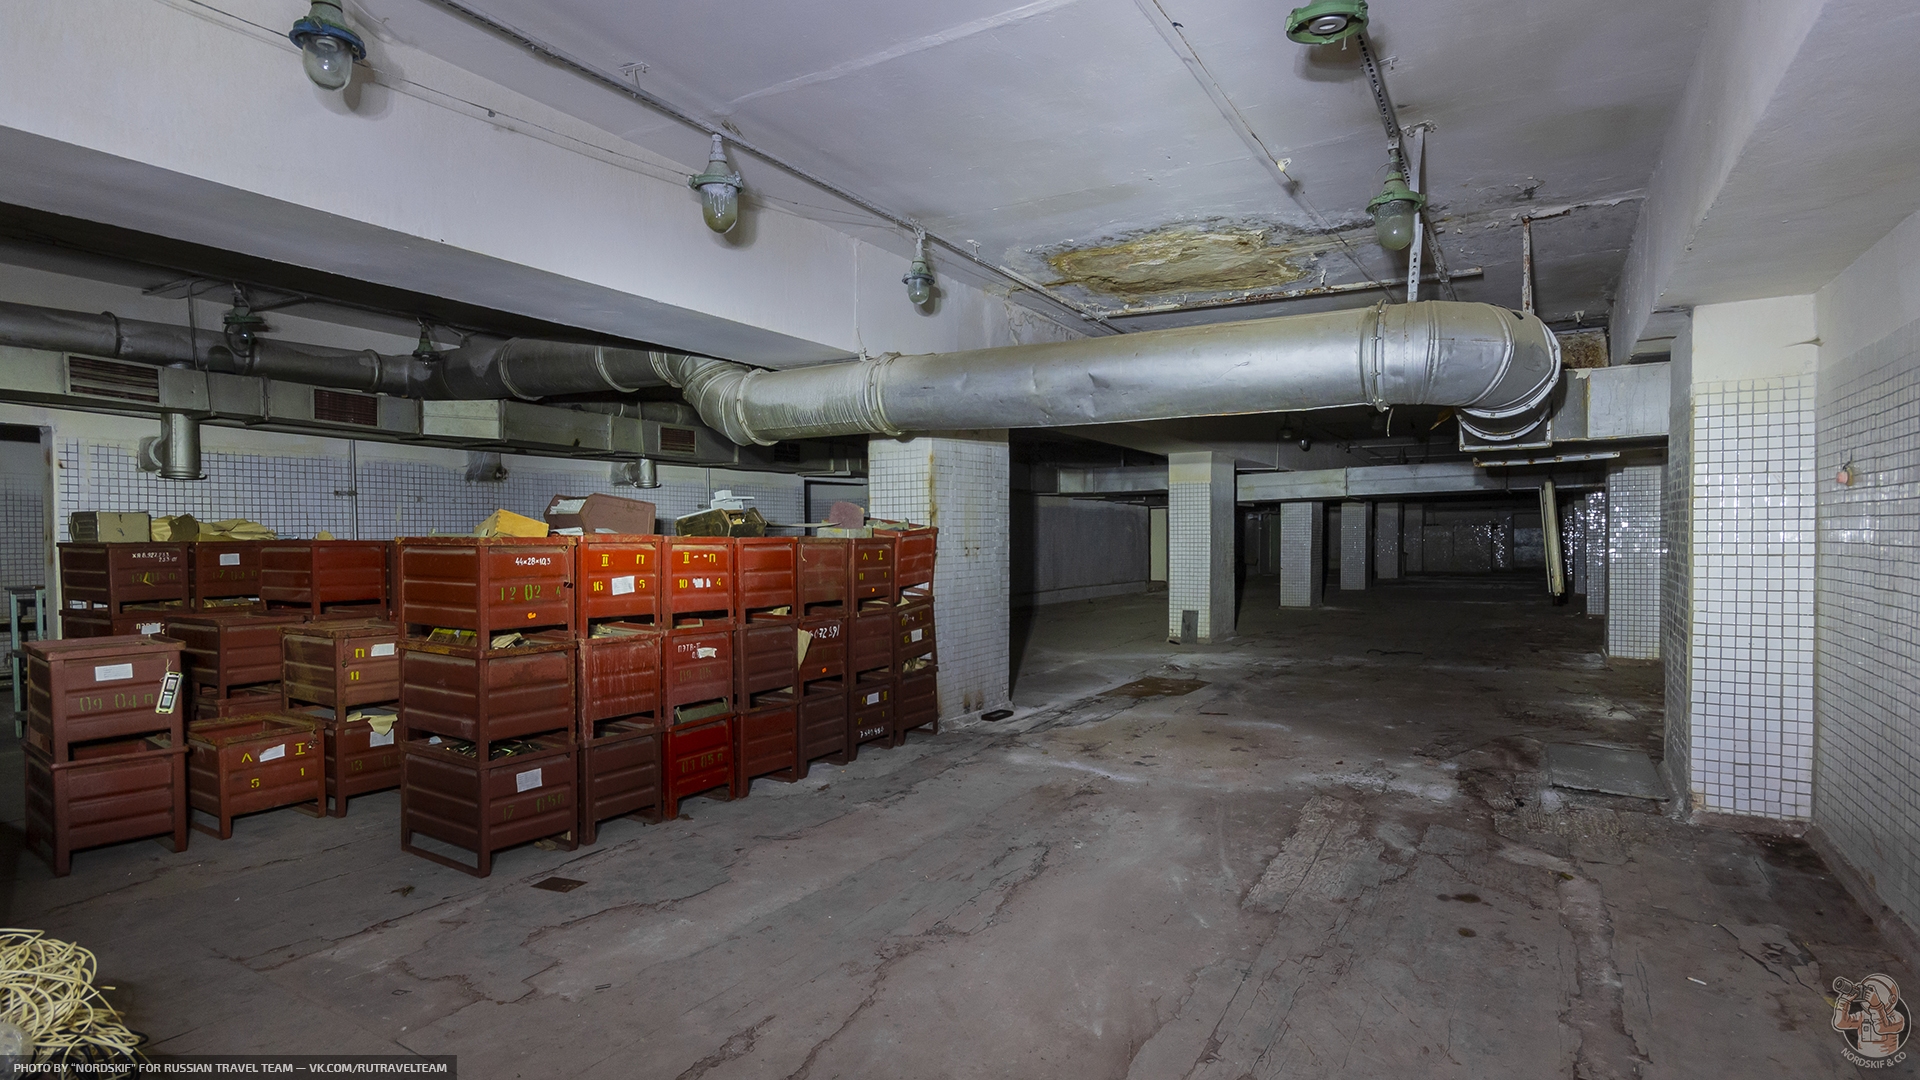 Это всё что осталось от советского завода — большой фоторепортаж про 2 огромных бомбоубежища под "офисным зданием"